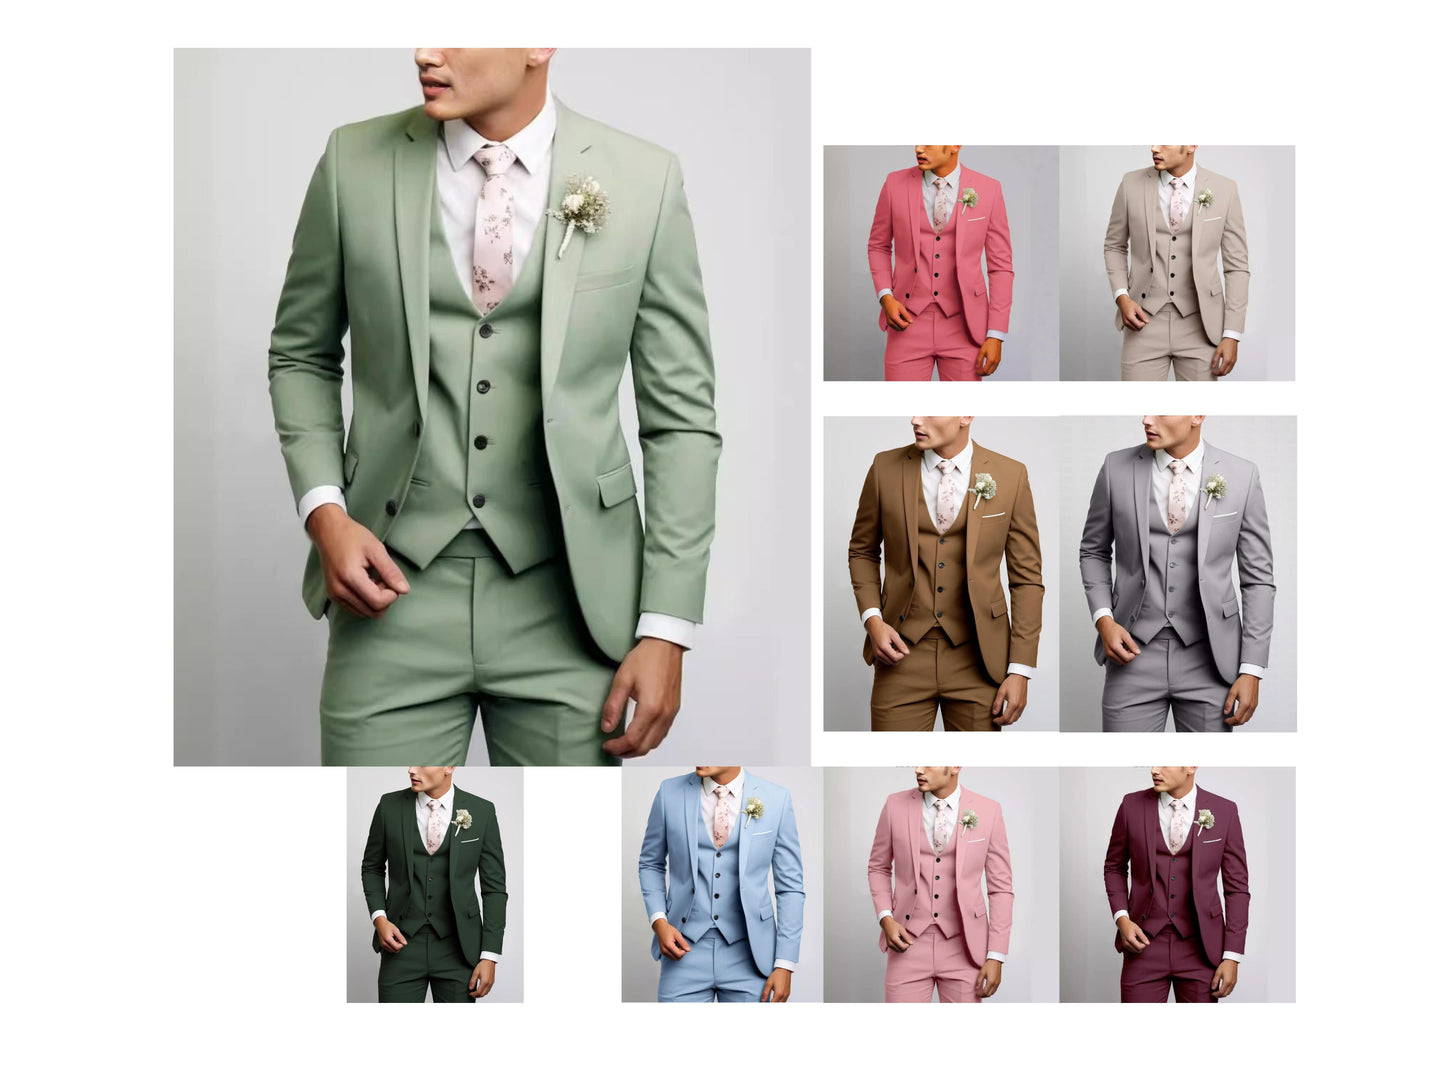 Premium Quality Men's 3 Pieces Suit Tuxedo Signature Smart Fit Wedding Parties Casual & Business Suits | 2901